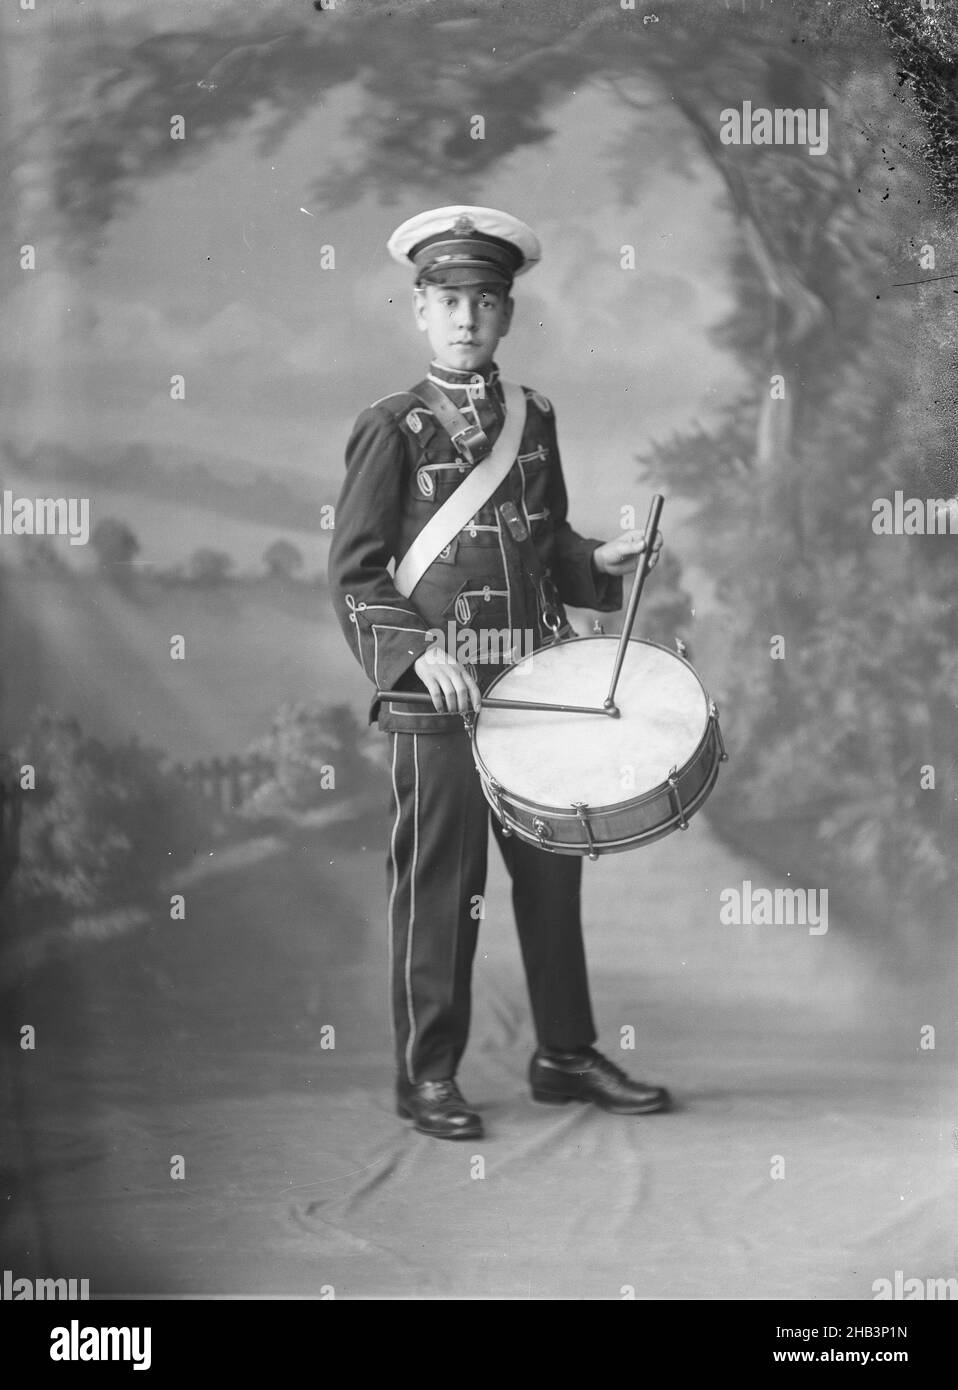 Mutson PC, Berry & Co, um 1920, Wellington, Vollansicht eines jungen Mannes in Banduniform, mit einer großen Trommel Stockfoto